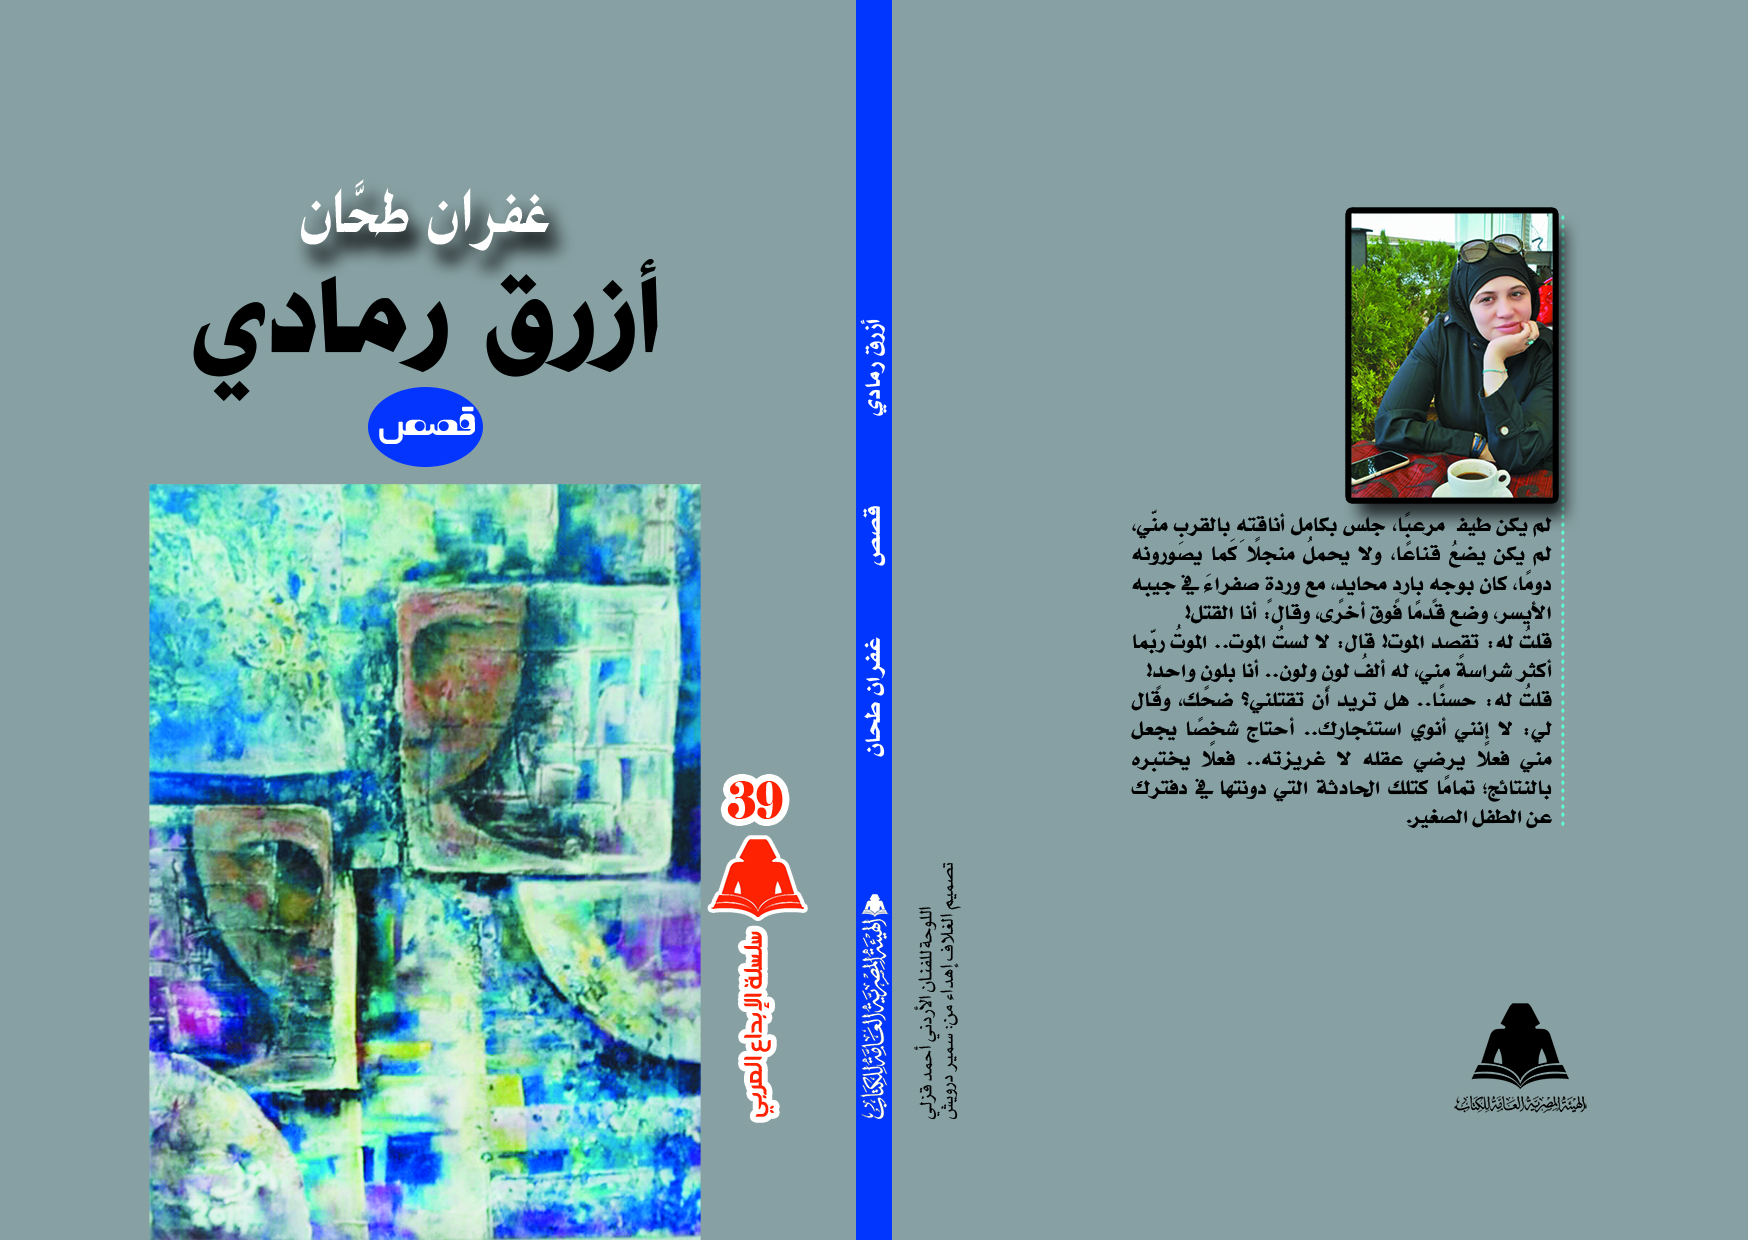 هيئة الكتاب تُصدر "أزرق رمادي"..  مجموعة قصصية جديدة للقاصة السورية غفران طحان